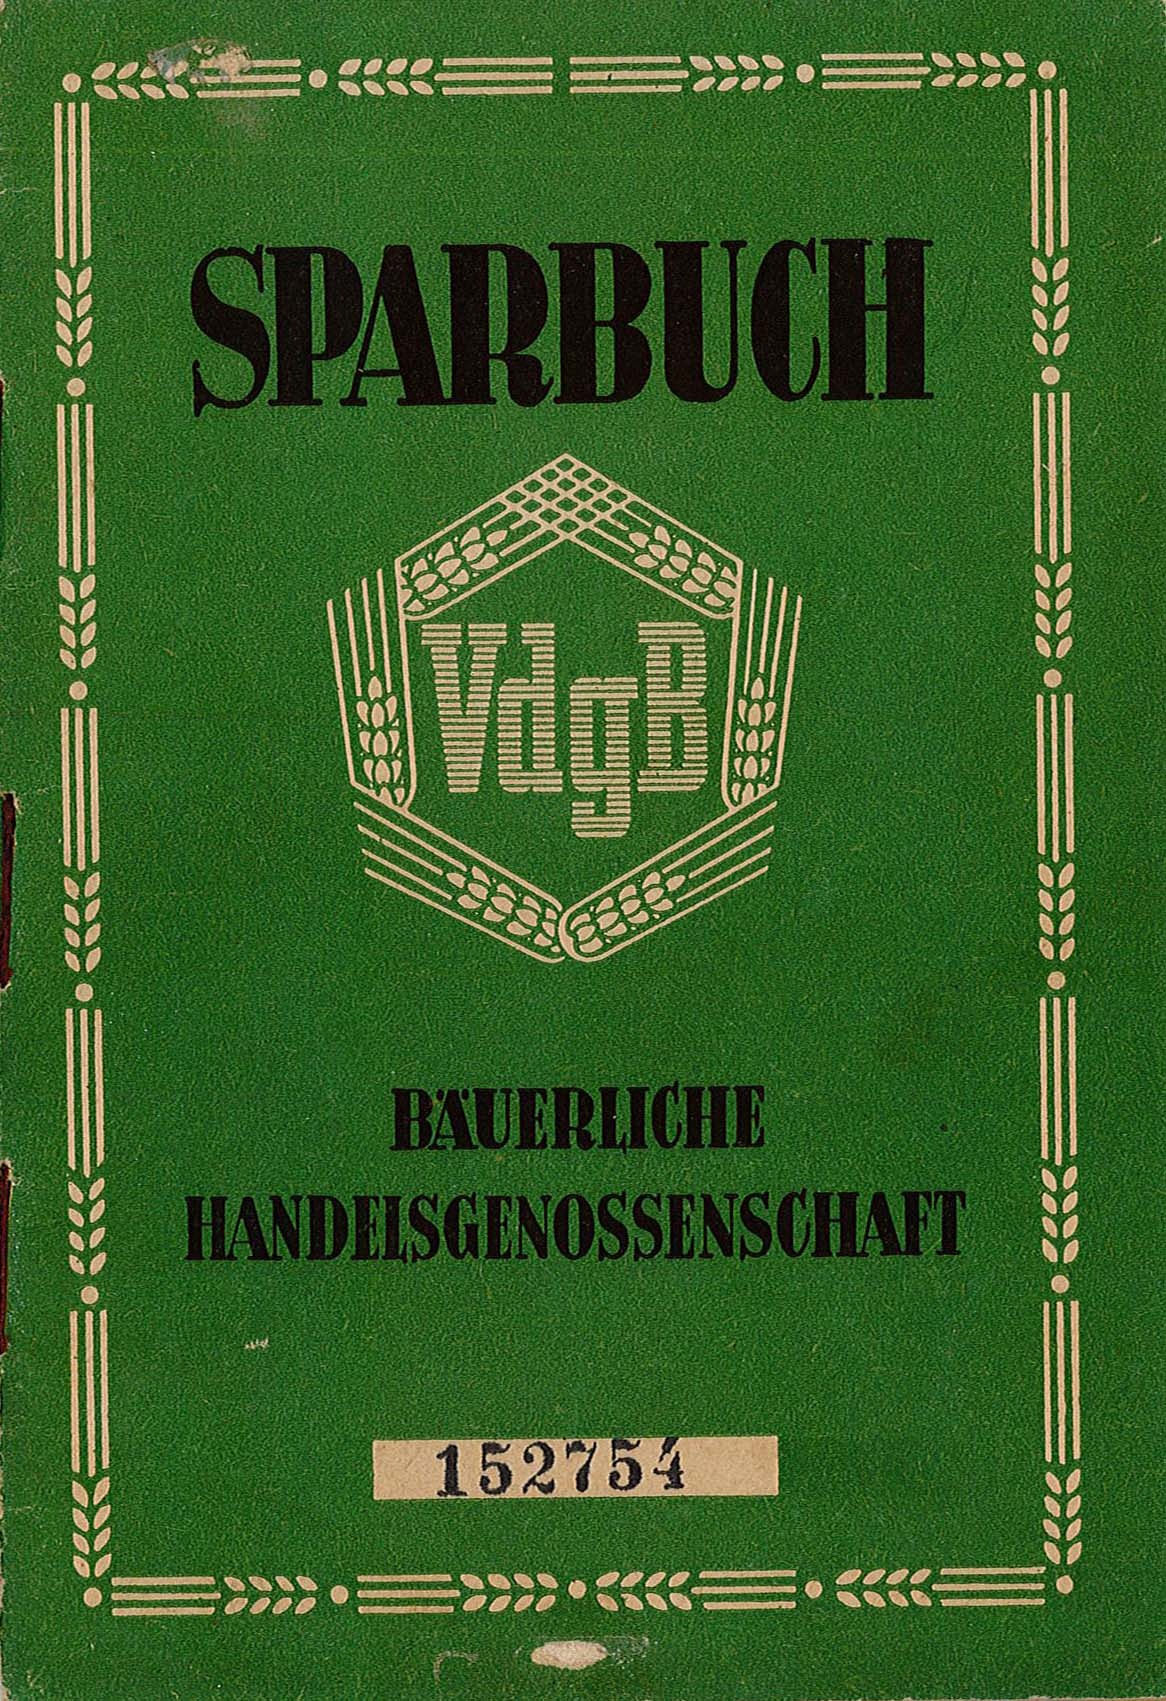 Sparbuch der Bäuerlichen Handelsgenossenschaft von Otto Standke, 1953-1954 (Museum Wolmirstedt RR-F)